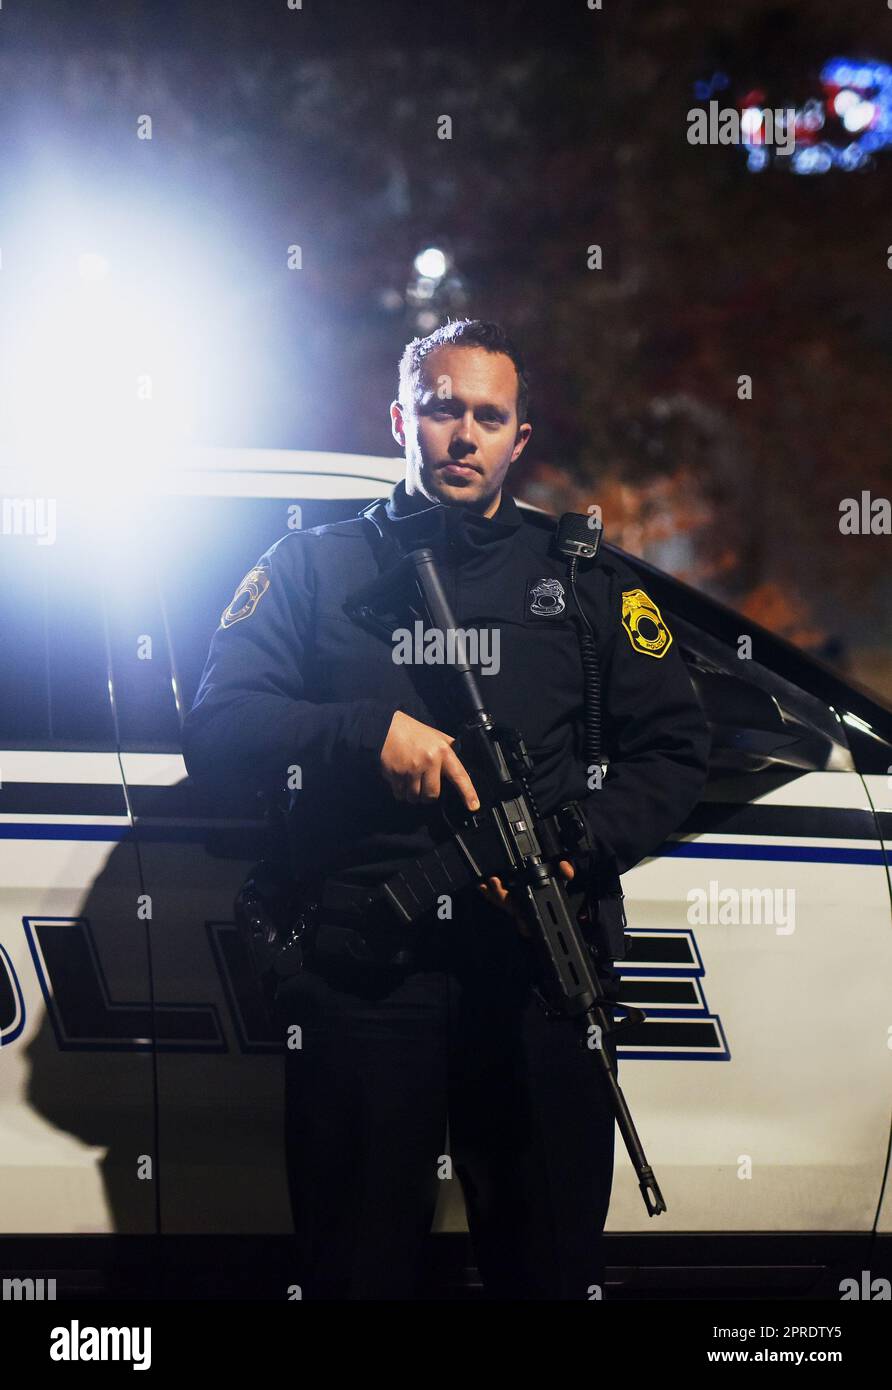 Zu dienen und zu schützen, unabhängig von den Kosten. Beschnittenes Porträt eines hübschen jungen Polizisten, der mit seinem Sturmgewehr auf der Patrouille steht. Stockfoto